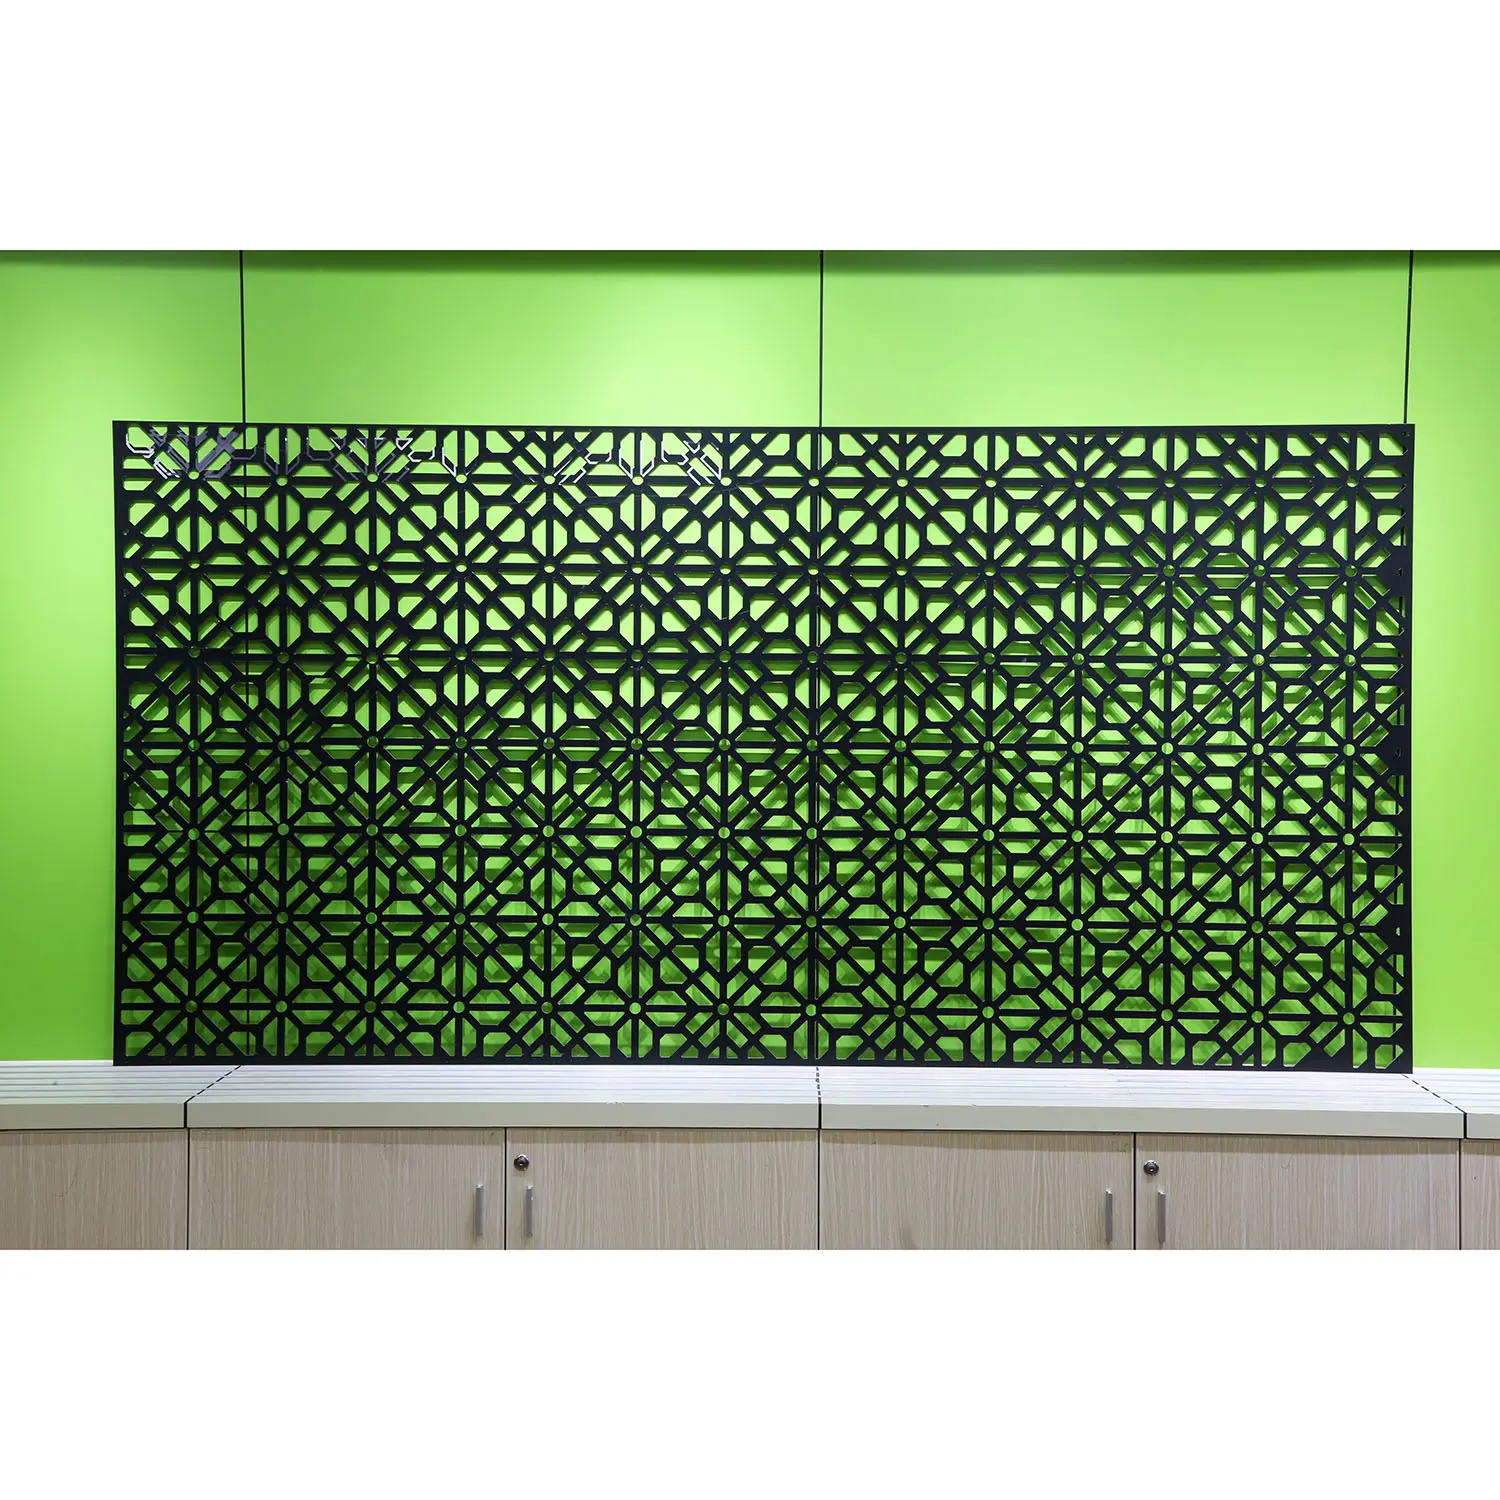 Foglio esterno alucobond rivestimento murale naturale flessibile pannelli in pietra mobili pannelli a parete in legno pannelli in alluminio composito